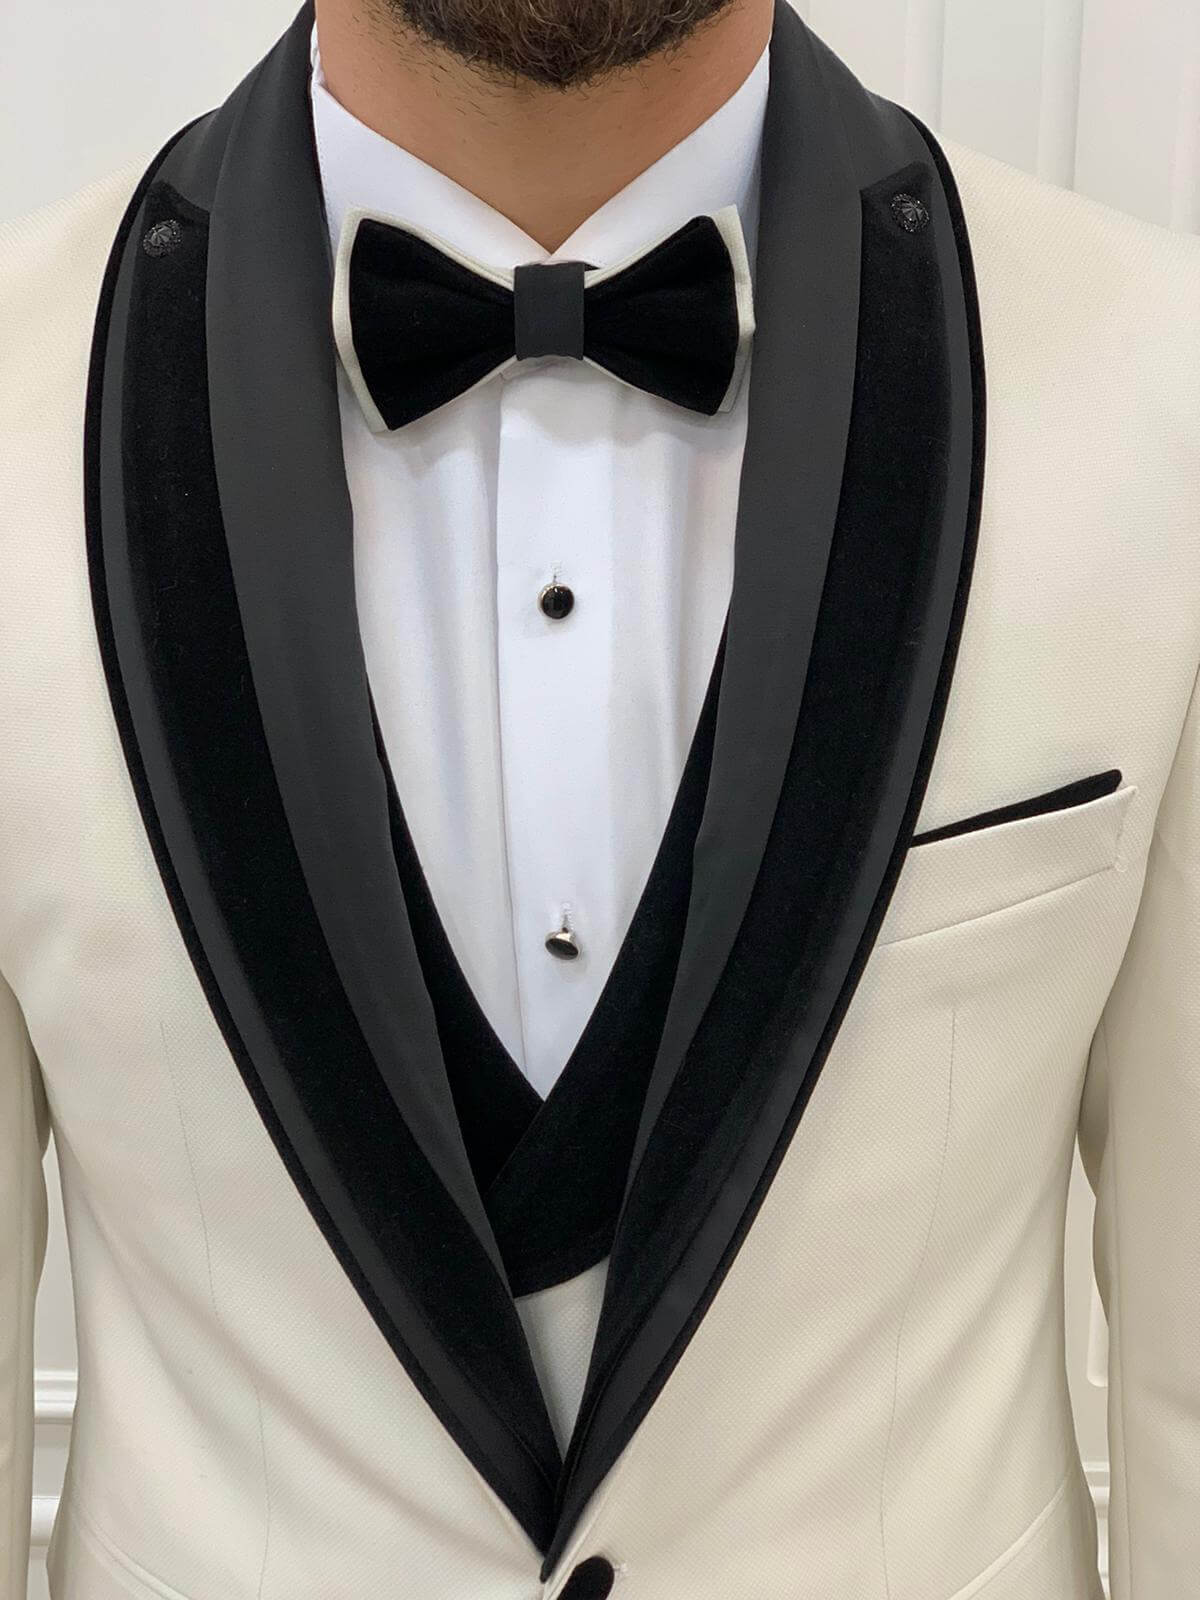 White Tuxedo for Prom & Weddings